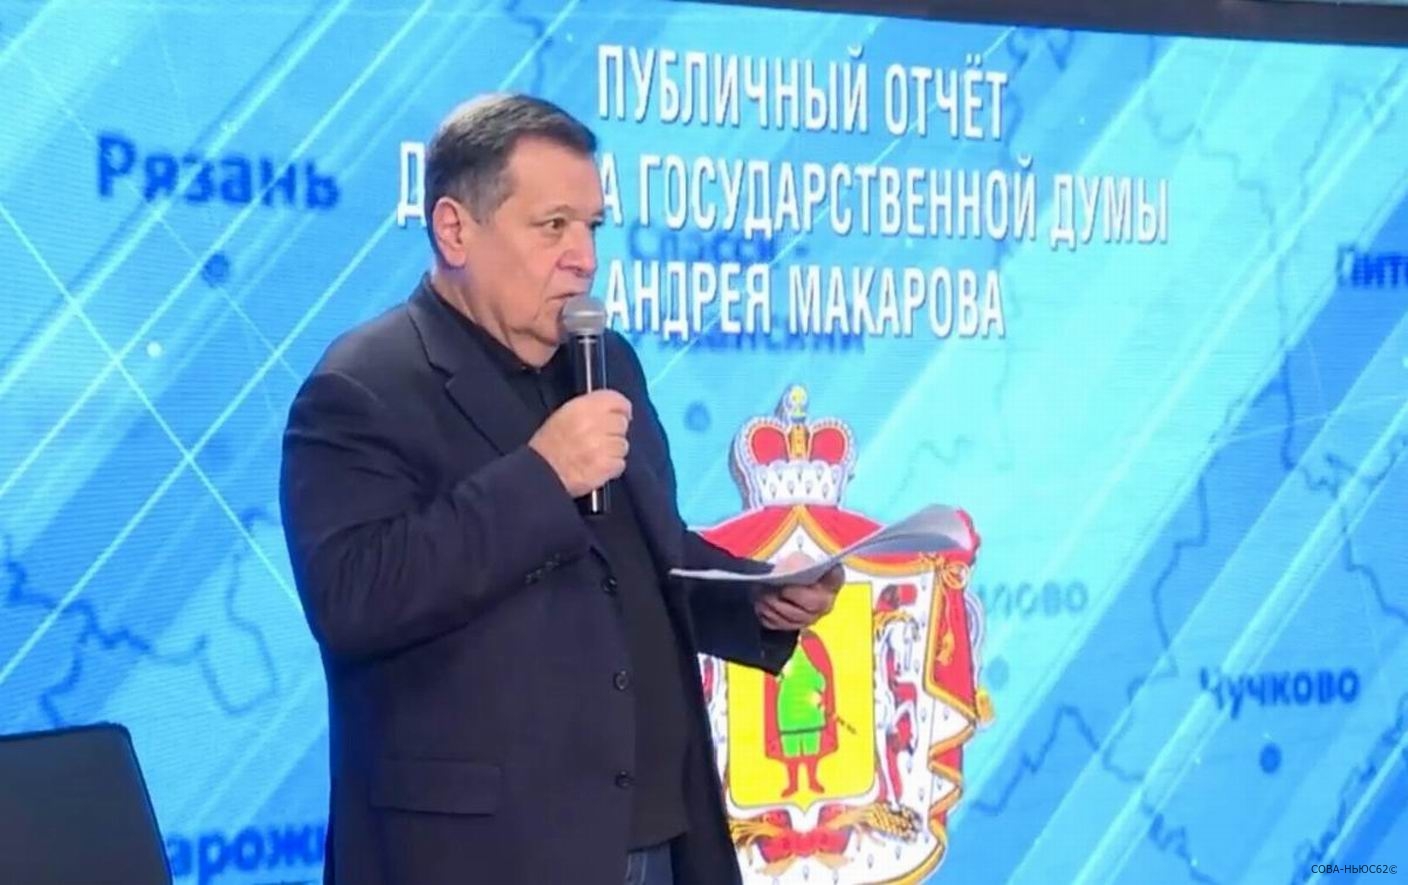 Депутат Госдумы Андрей Макаров рассказал в Рязани об отмене бюджетного правила